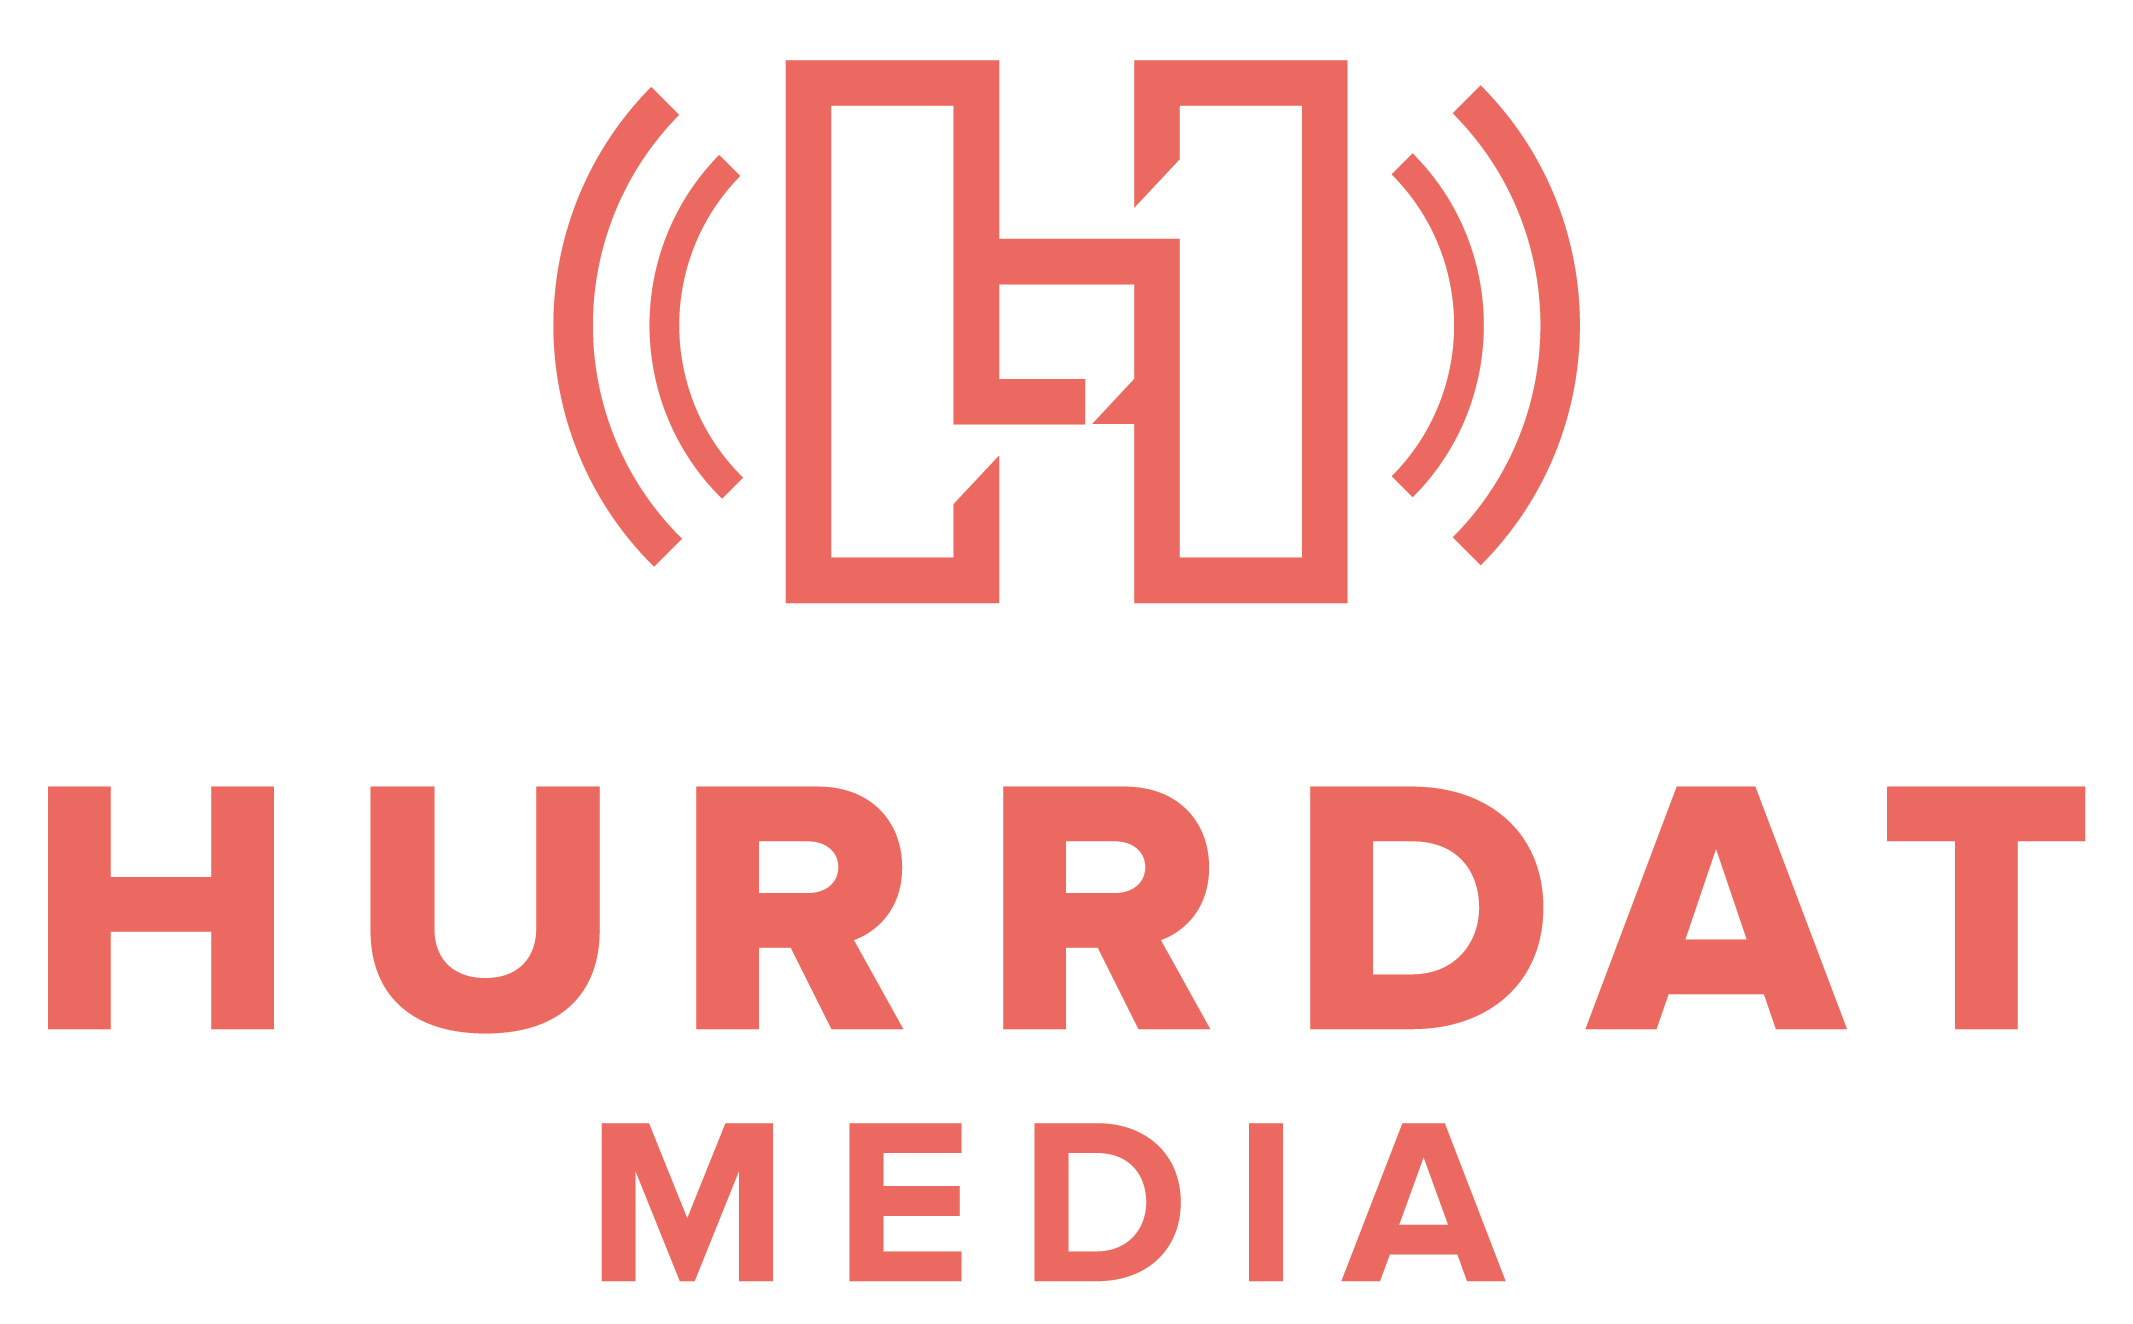 Hurrdat-Media-logo-2.png